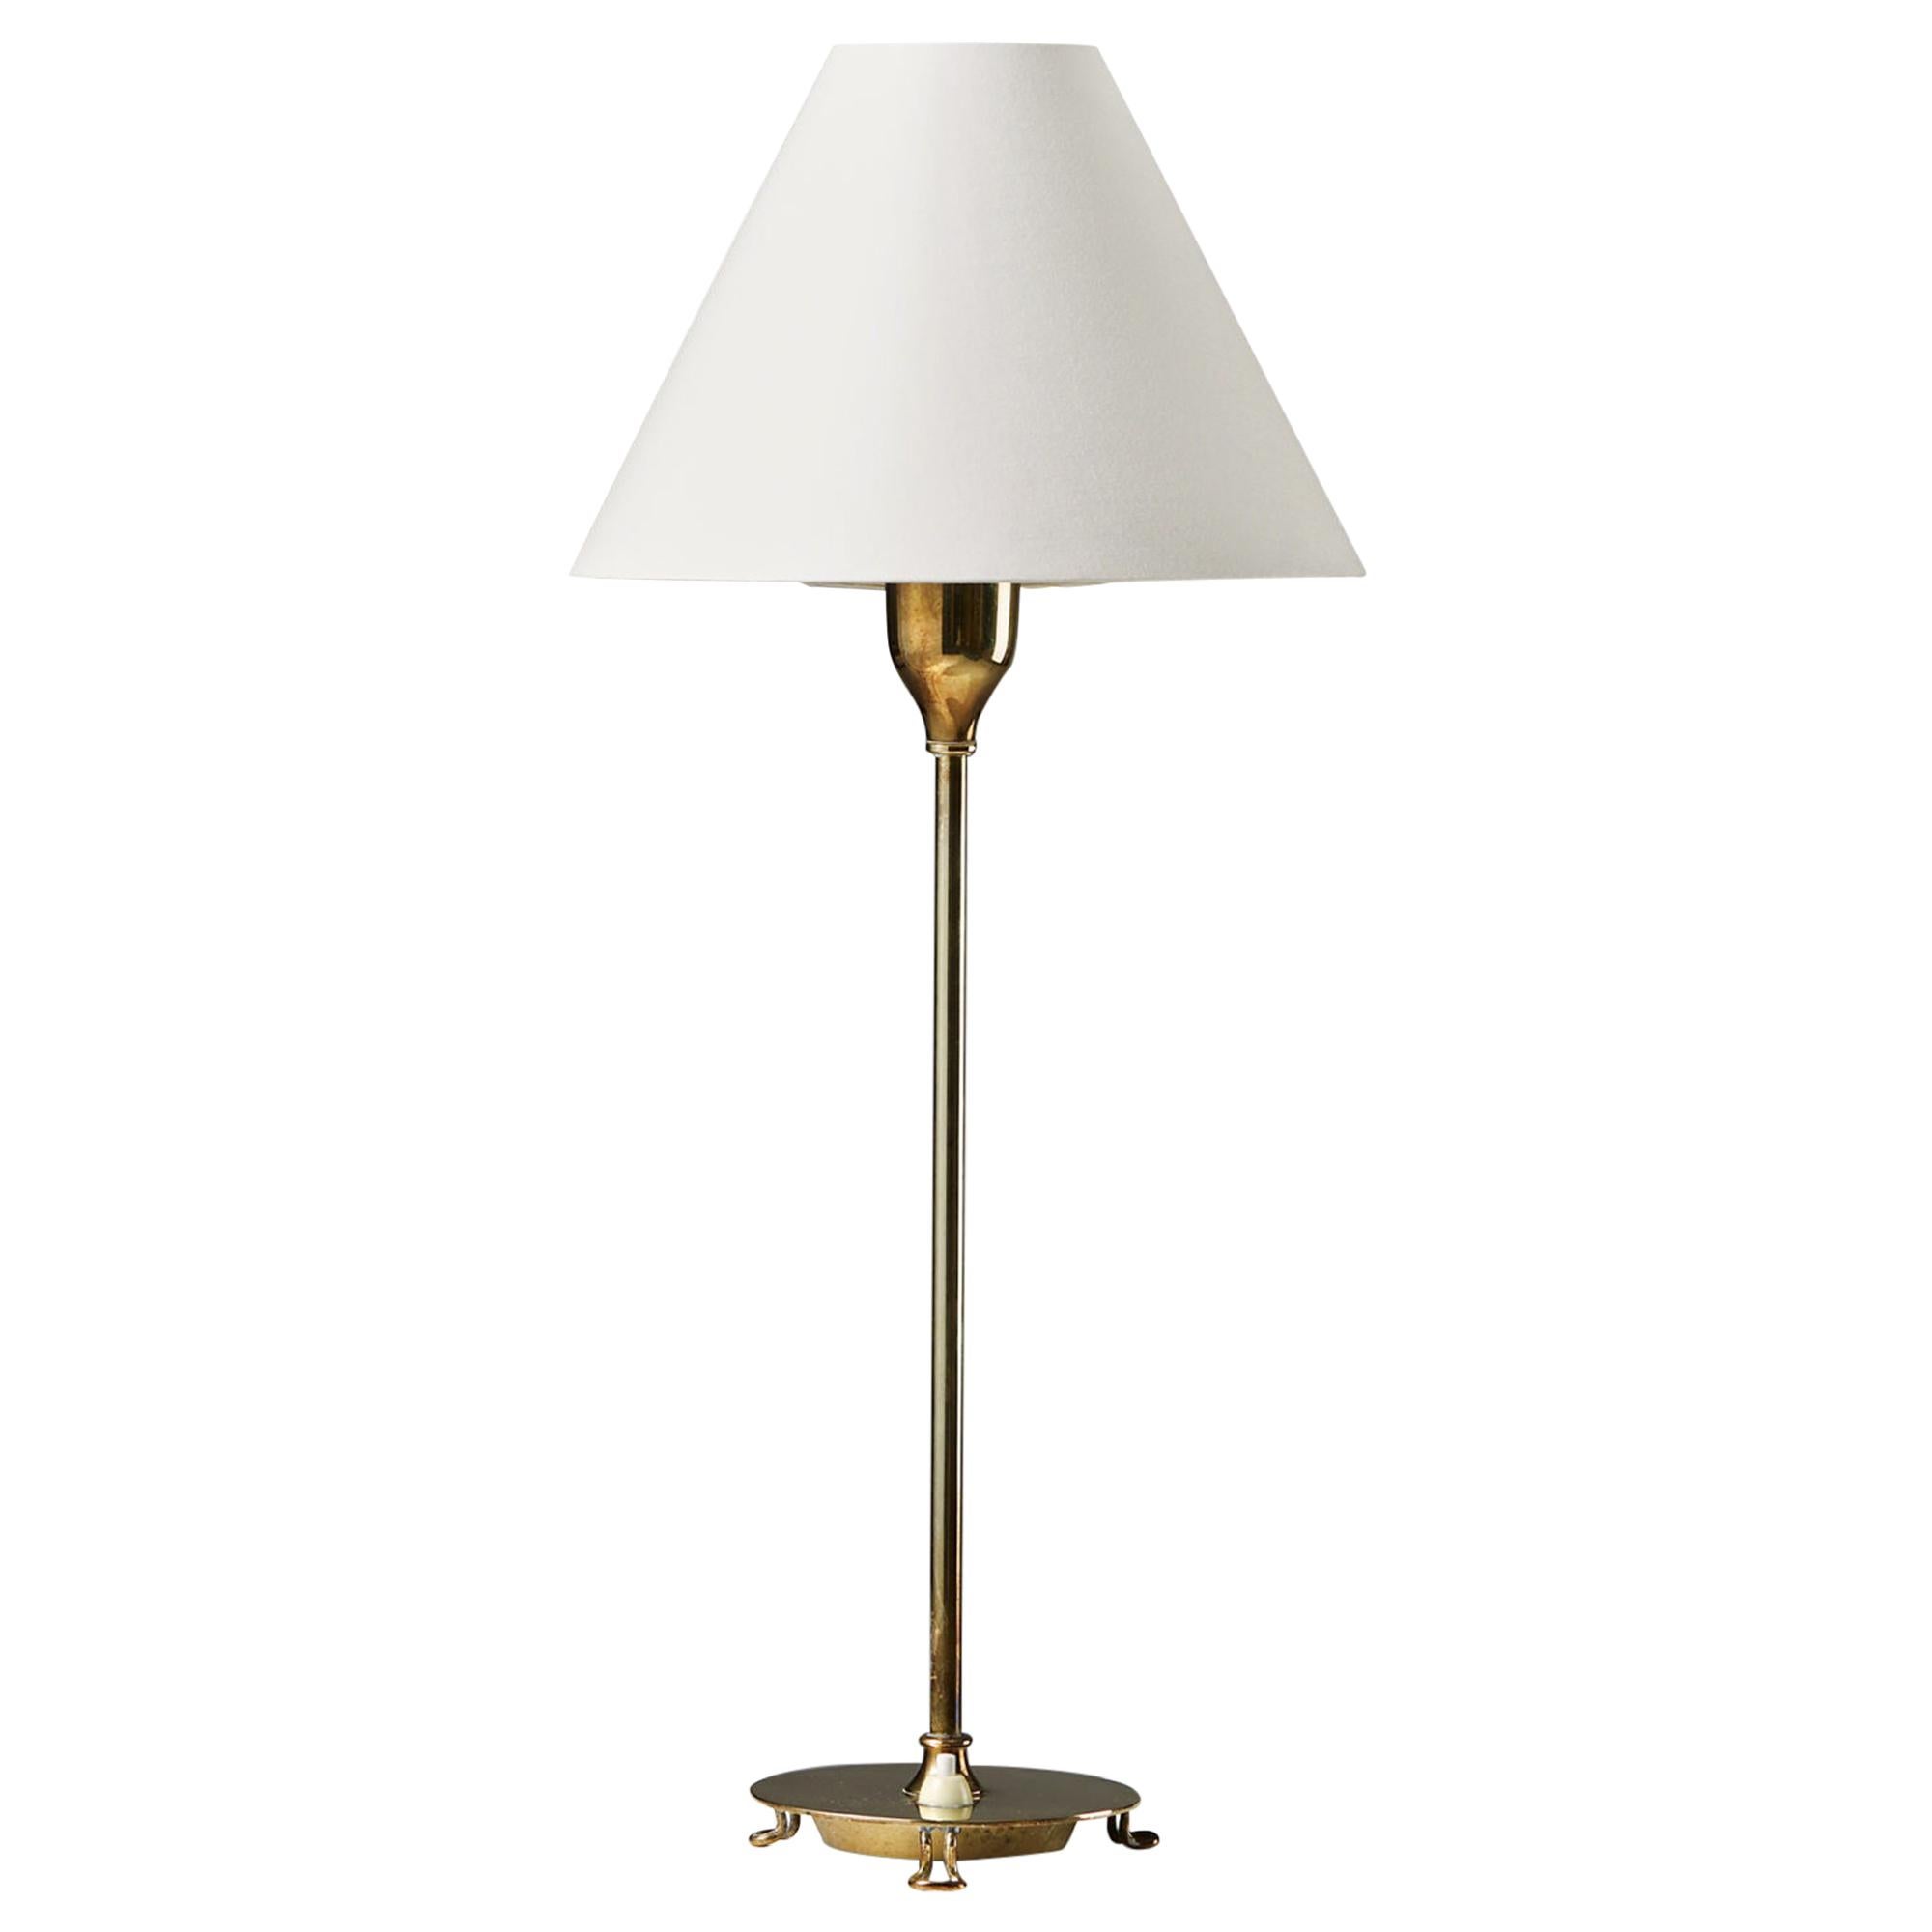 Table Lamp Model 2552/2 Designed by Josef Frank for Svenskt Tenn, Sweden, 1938